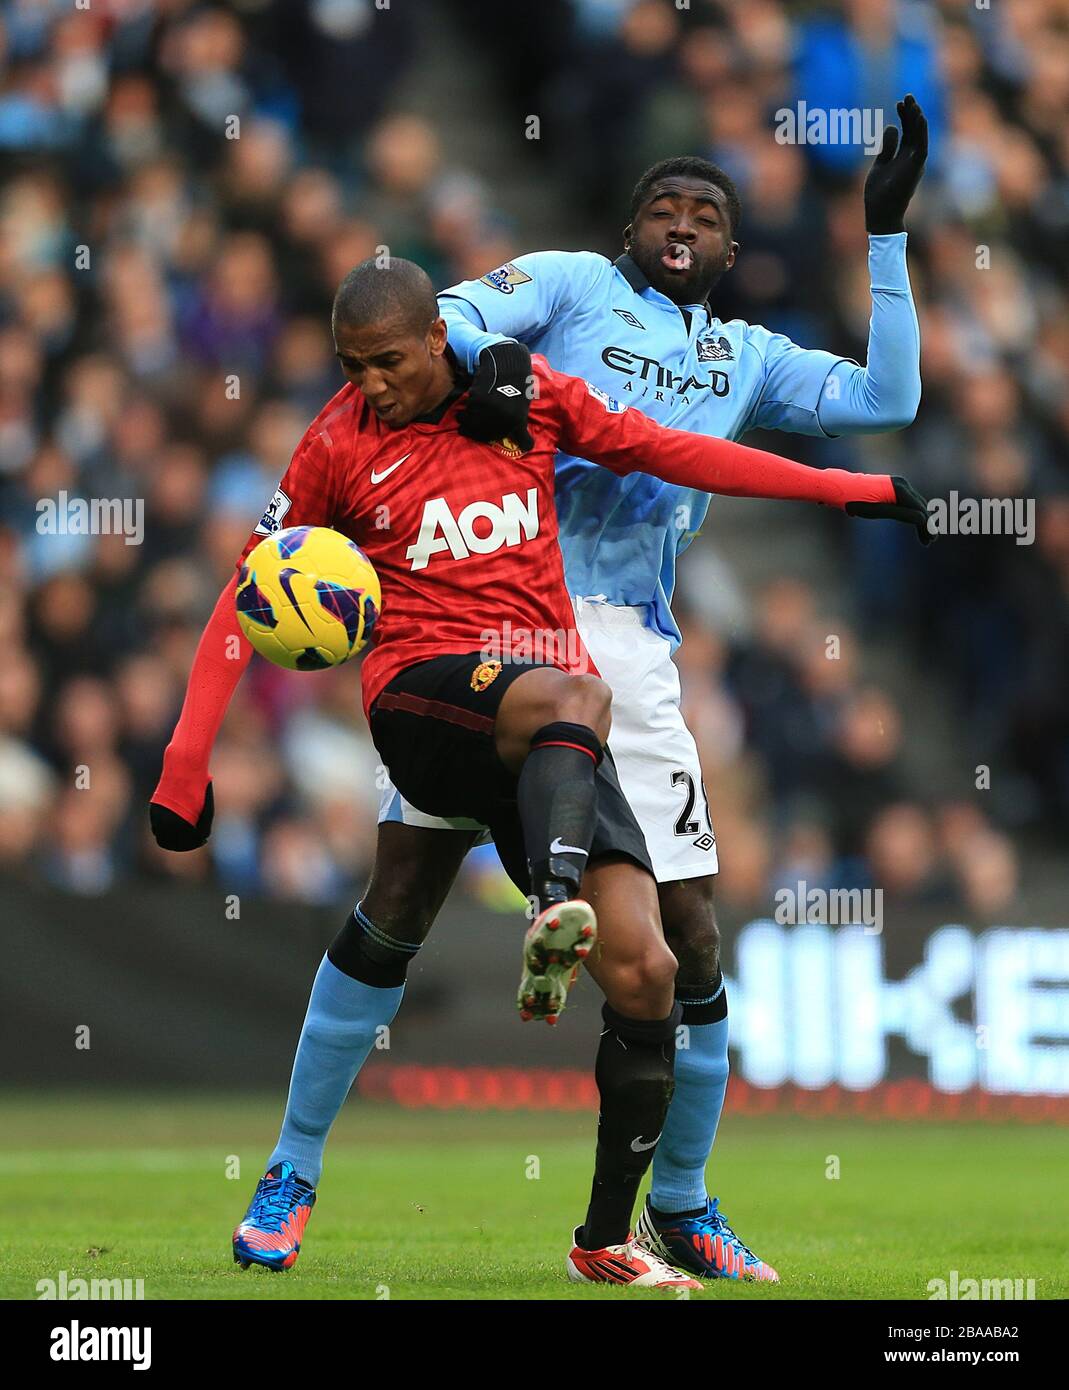 Der Kolo Toure (rechts) von Manchester City und Ashley Young (links) von Manchester United kämpfen um den Ball Stockfoto